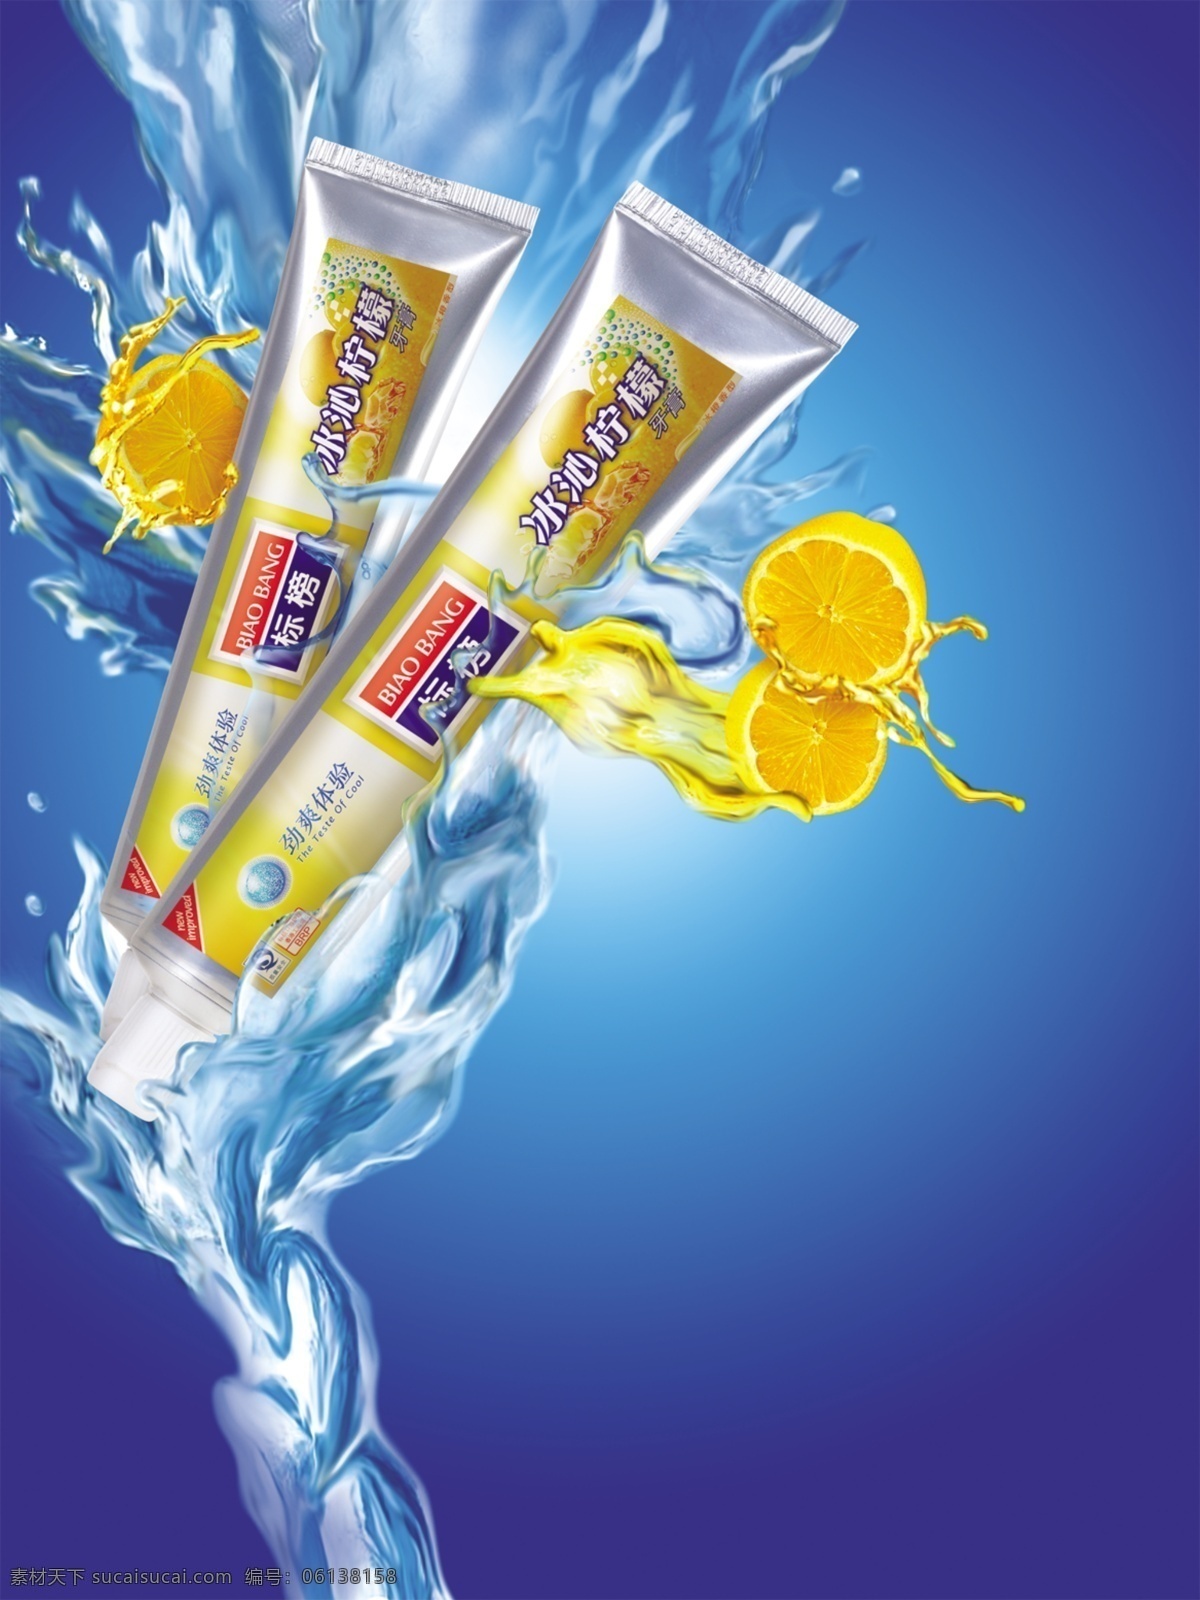 冰 沁 柠檬 牙膏 广告 水效 创意广告 牙膏海报 牙膏广告 奶浪 水果 广告设计模板 分层 蓝色